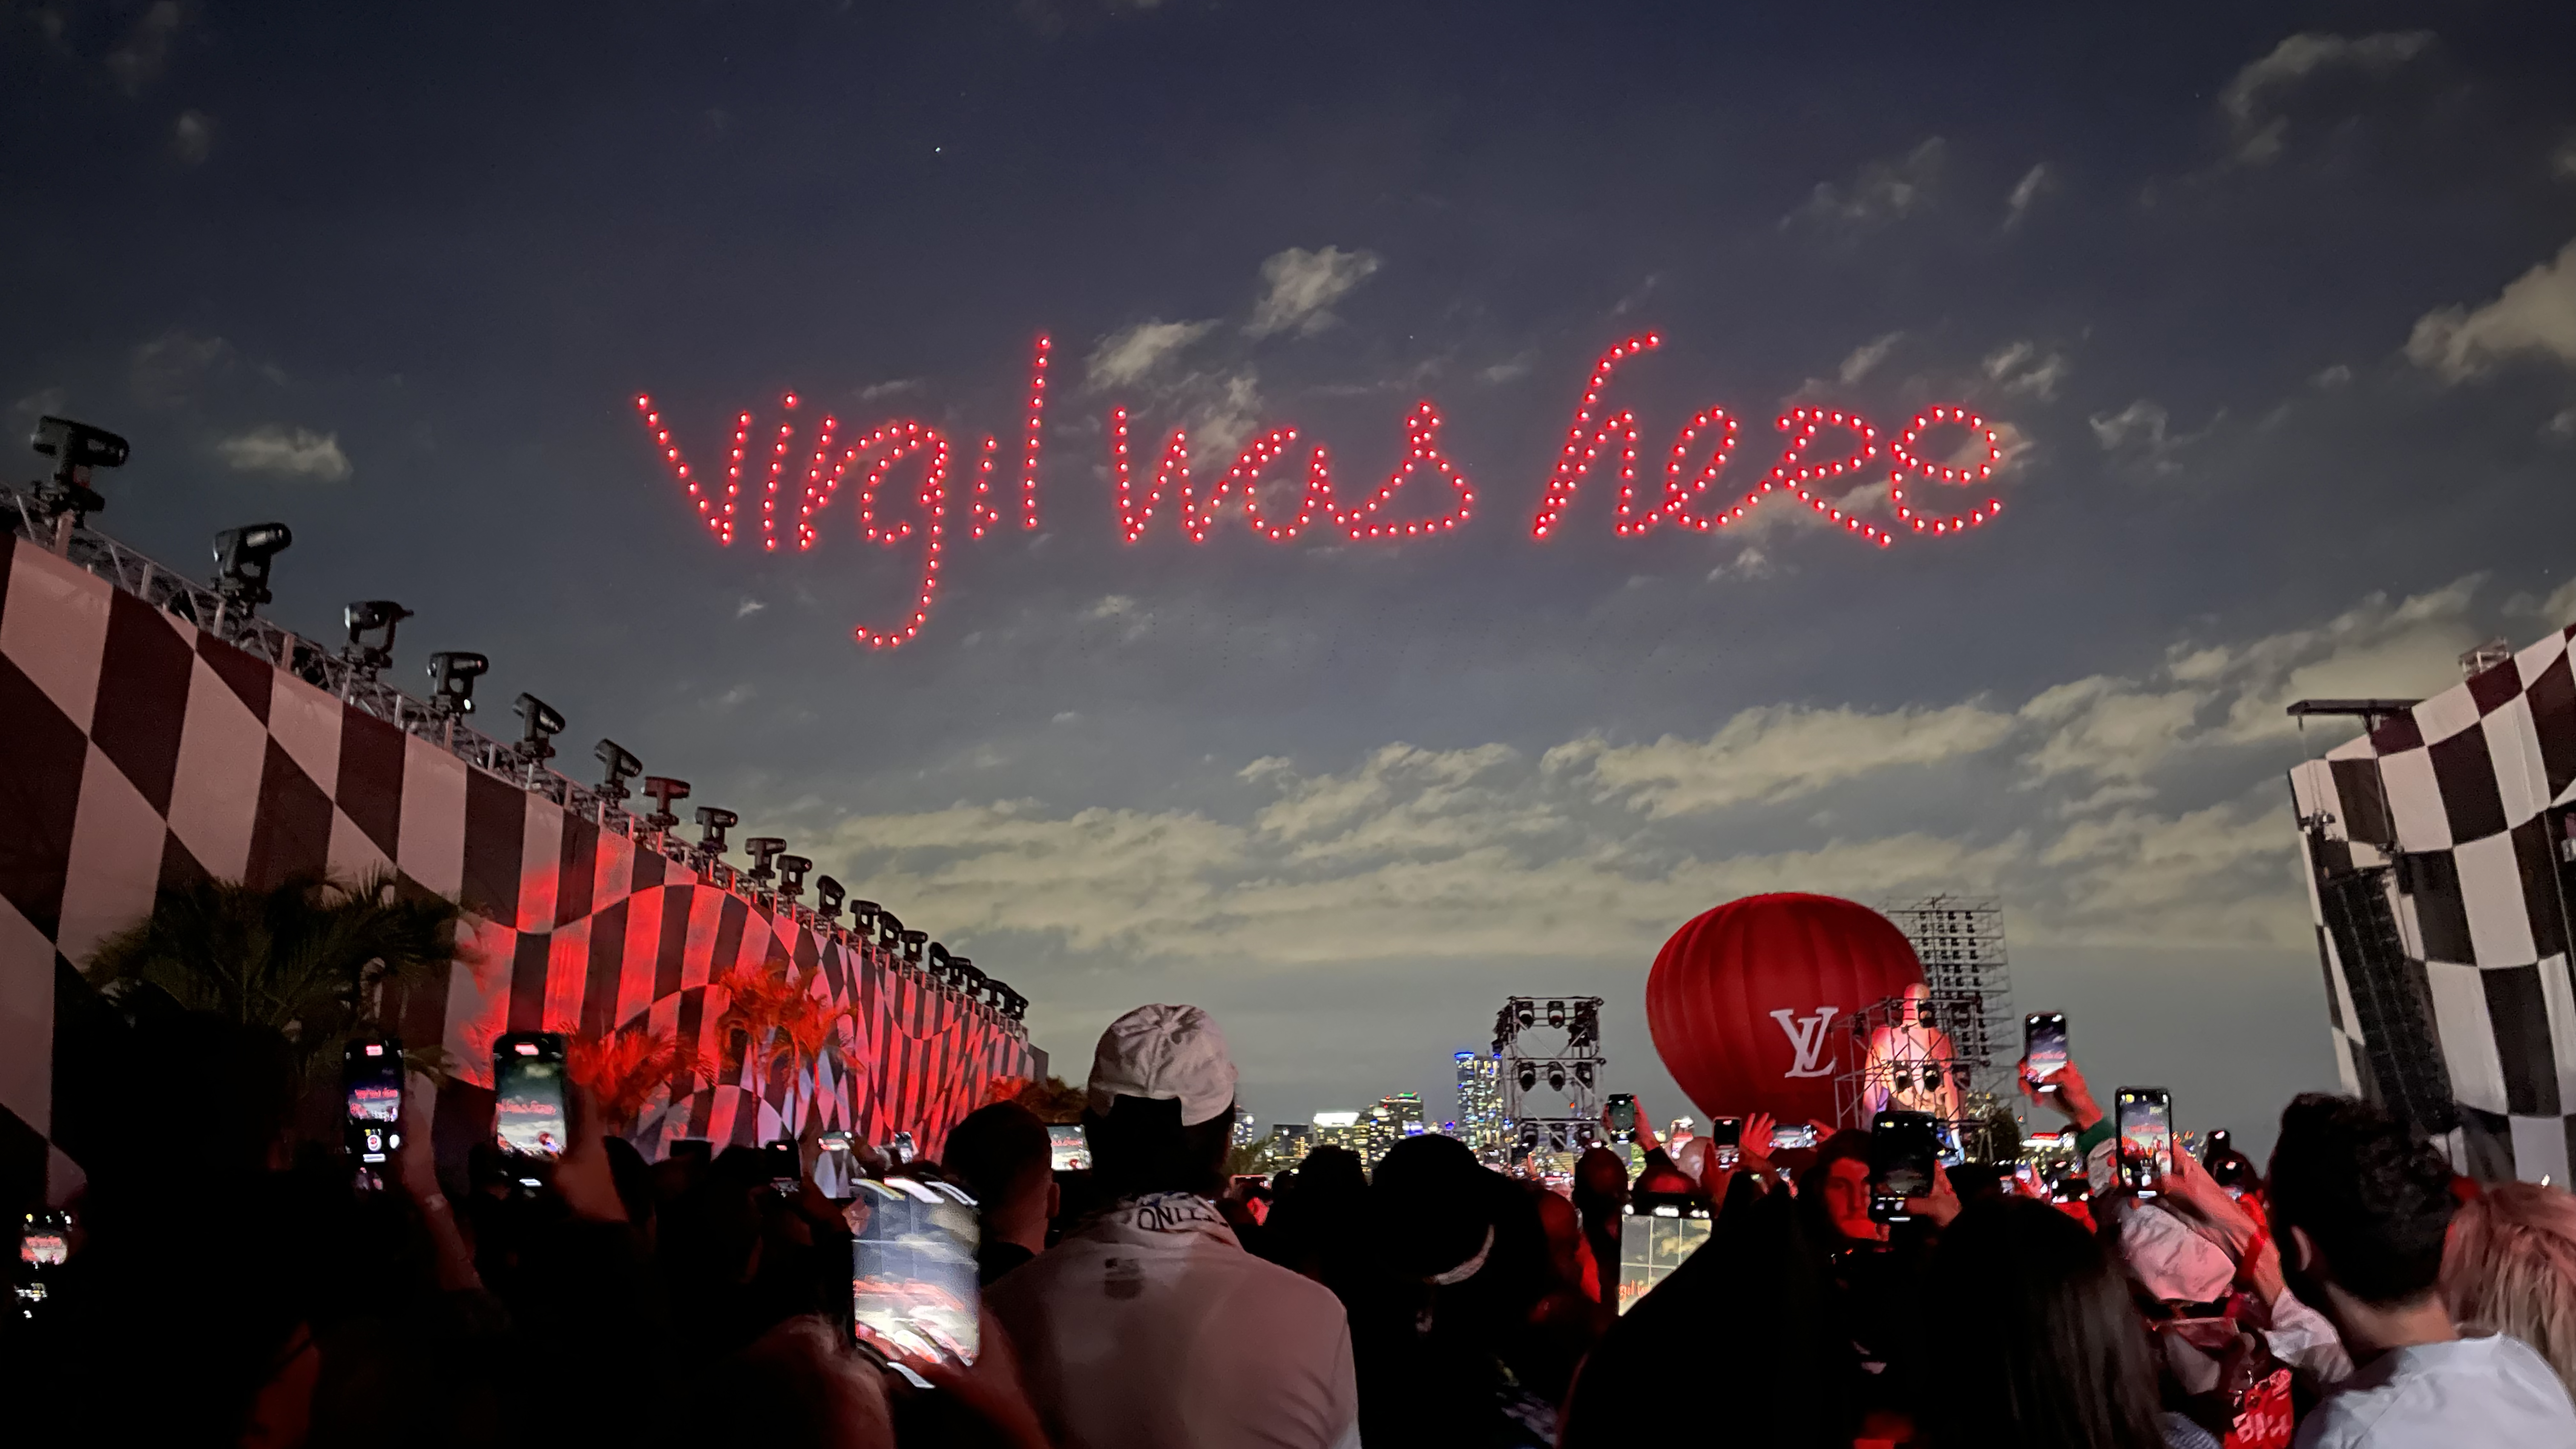 Louis Vuitton show pays tribute to designer Virgil Abloh